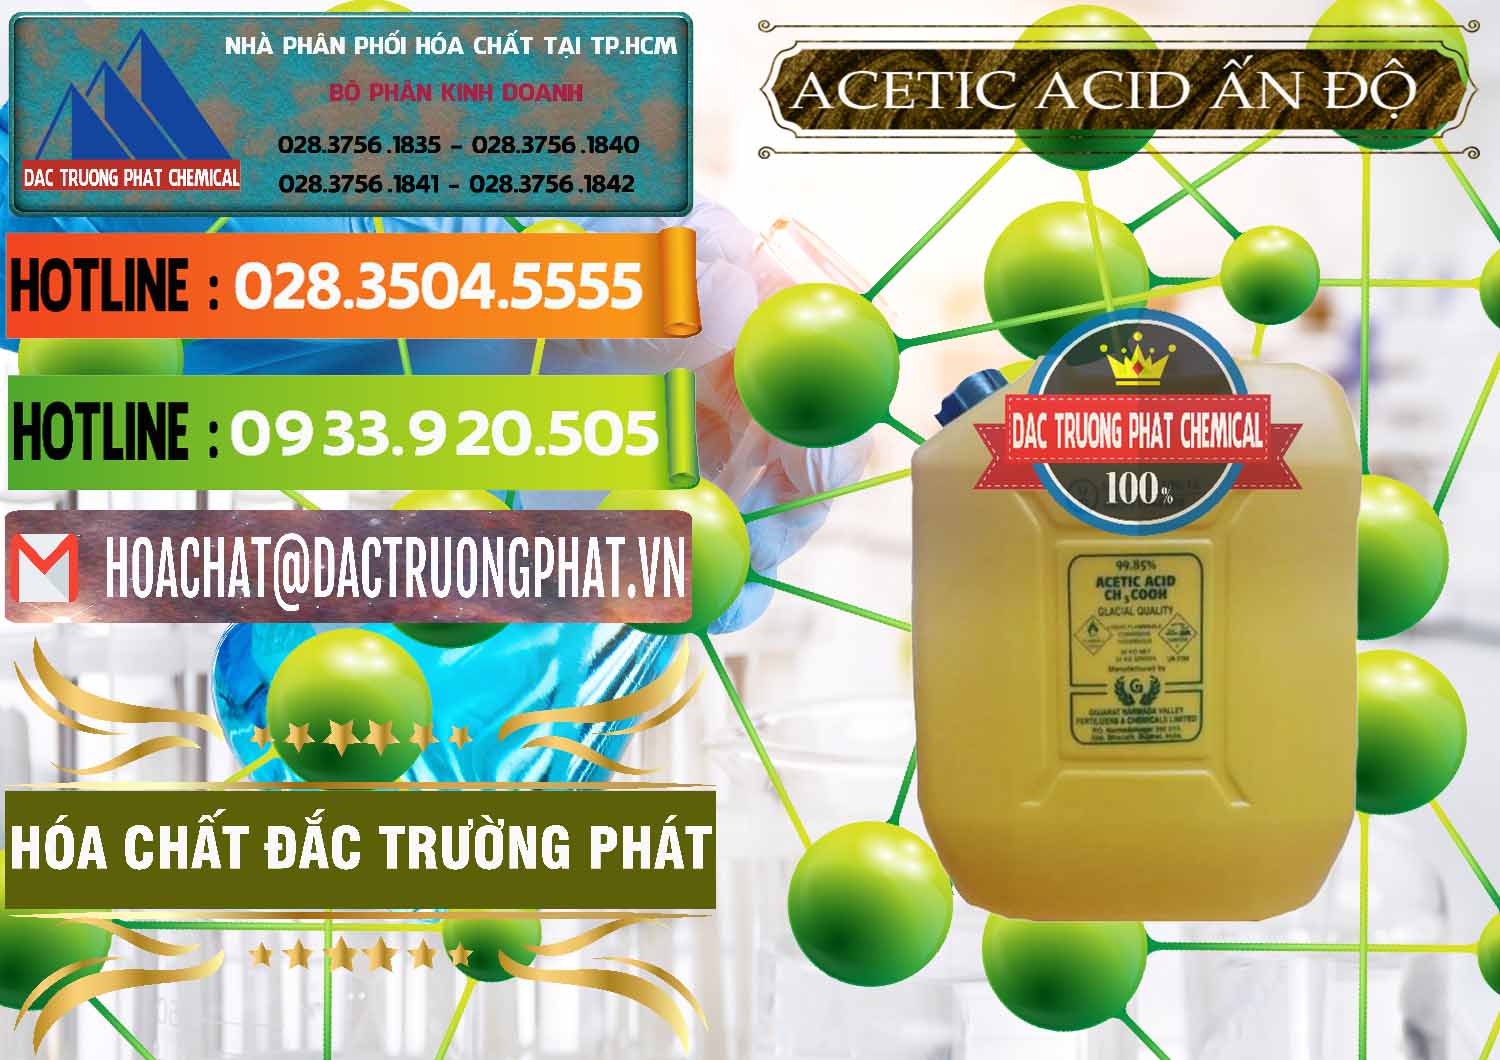 Công ty chuyên bán - phân phối Acetic Acid – Axit Acetic Ấn Độ India - 0359 - Cty chuyên kinh doanh _ cung cấp hóa chất tại TP.HCM - cungcaphoachat.com.vn